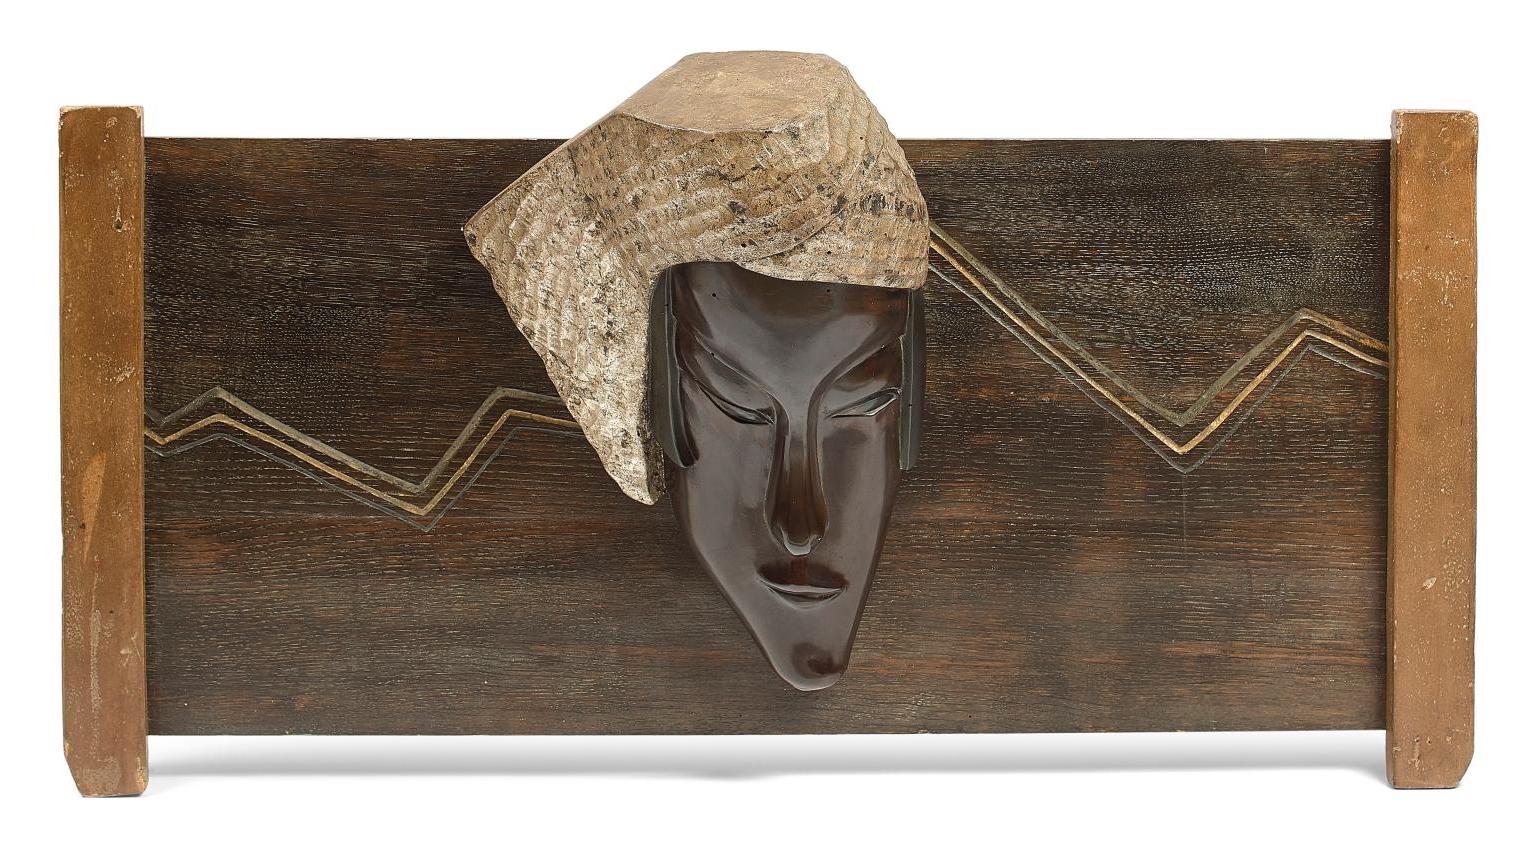 Seizo Sugawara (1884-1937), Masque de femme au turban, 1928, ébène et bois vernissé... Seizo Sugawara, une tabatière, un camée...